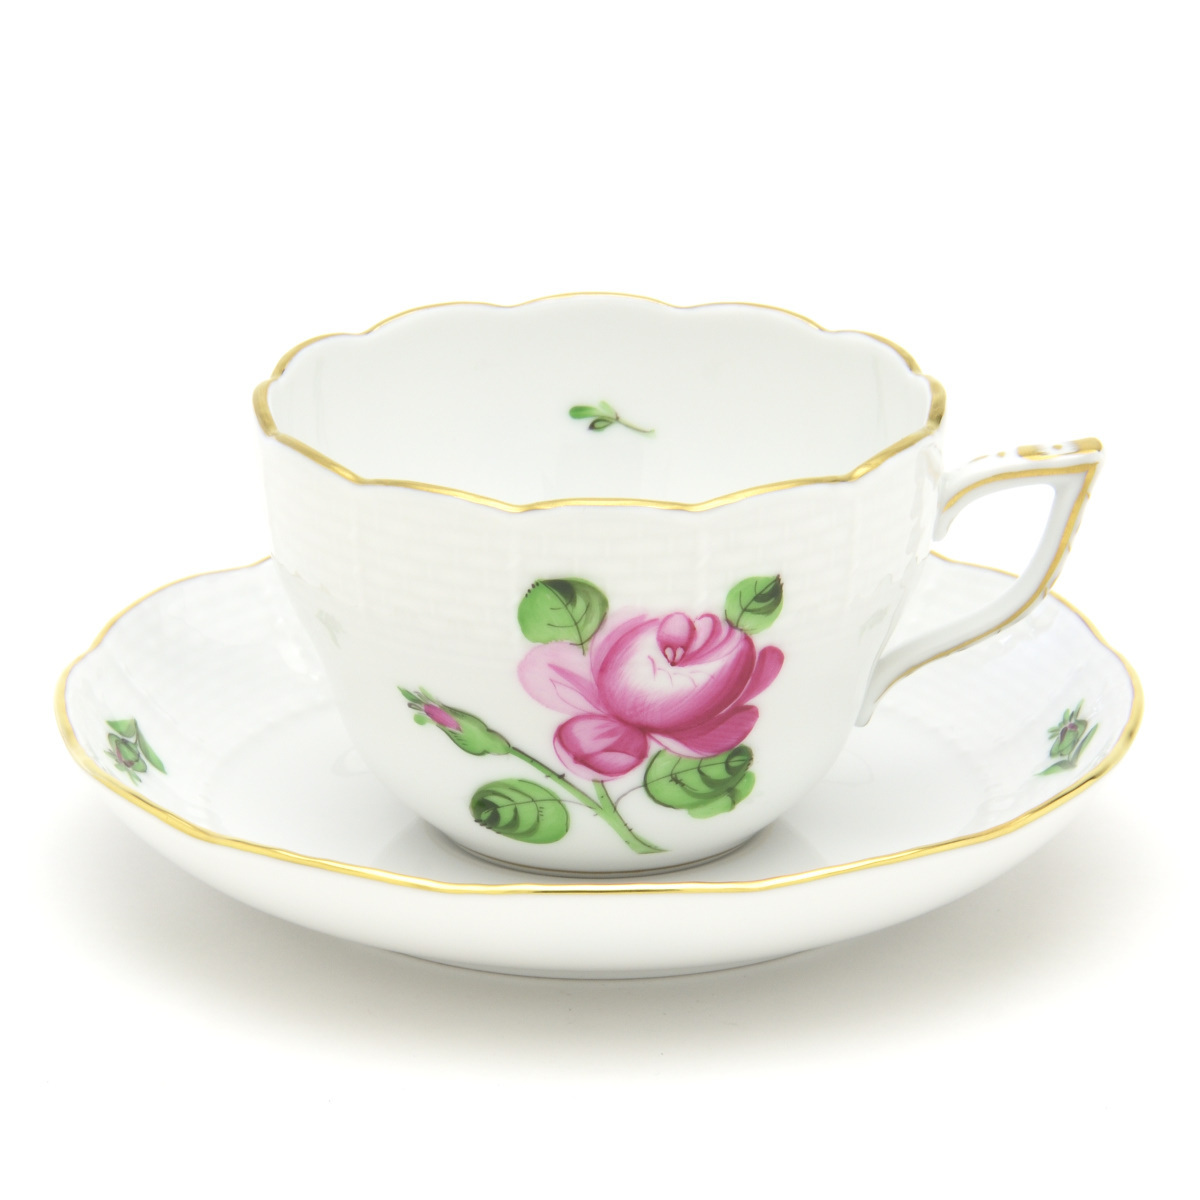 Herend Tasse et soucoupe à double usage Rose et bourgeon Vaisselle occidentale en porcelaine peinte à la main Tasse à café/thé Vaisselle fabriquée en Hongrie Nouveau Herend, ustensiles à thé, tasse et soucoupe, café, Pour le thé et le thé